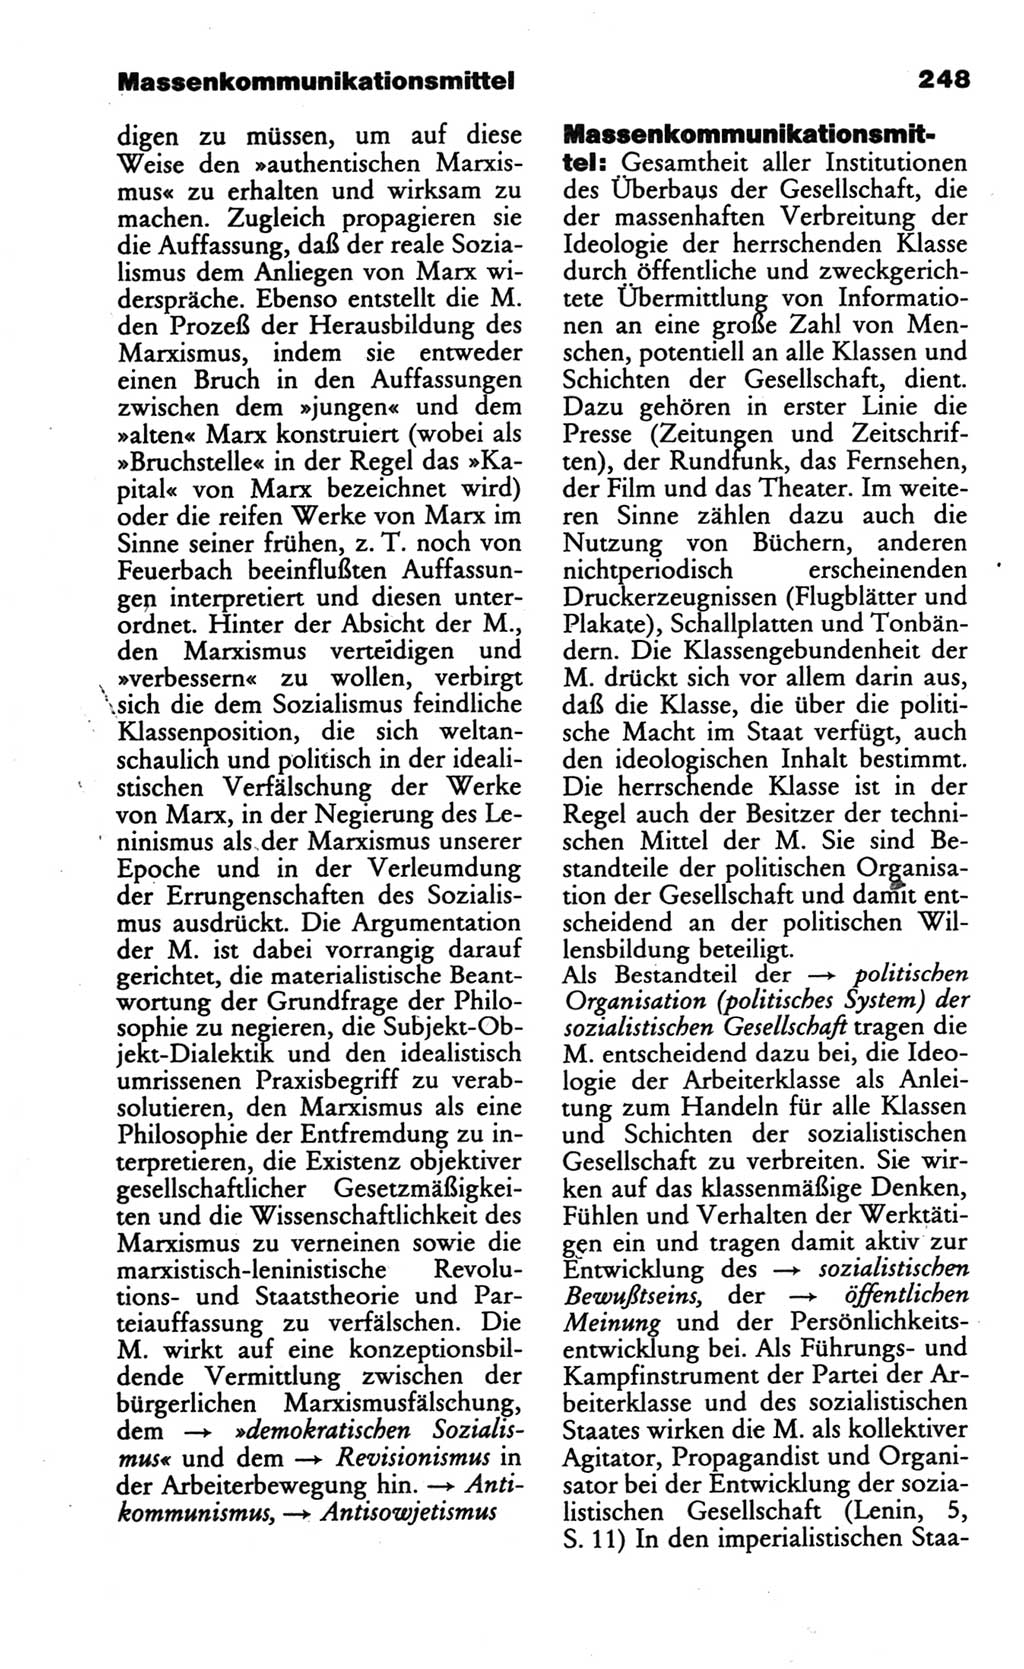 Wörterbuch des wissenschaftlichen Kommunismus [Deutsche Demokratische Republik (DDR)] 1986, Seite 248 (Wb. wiss. Komm. DDR 1986, S. 248)